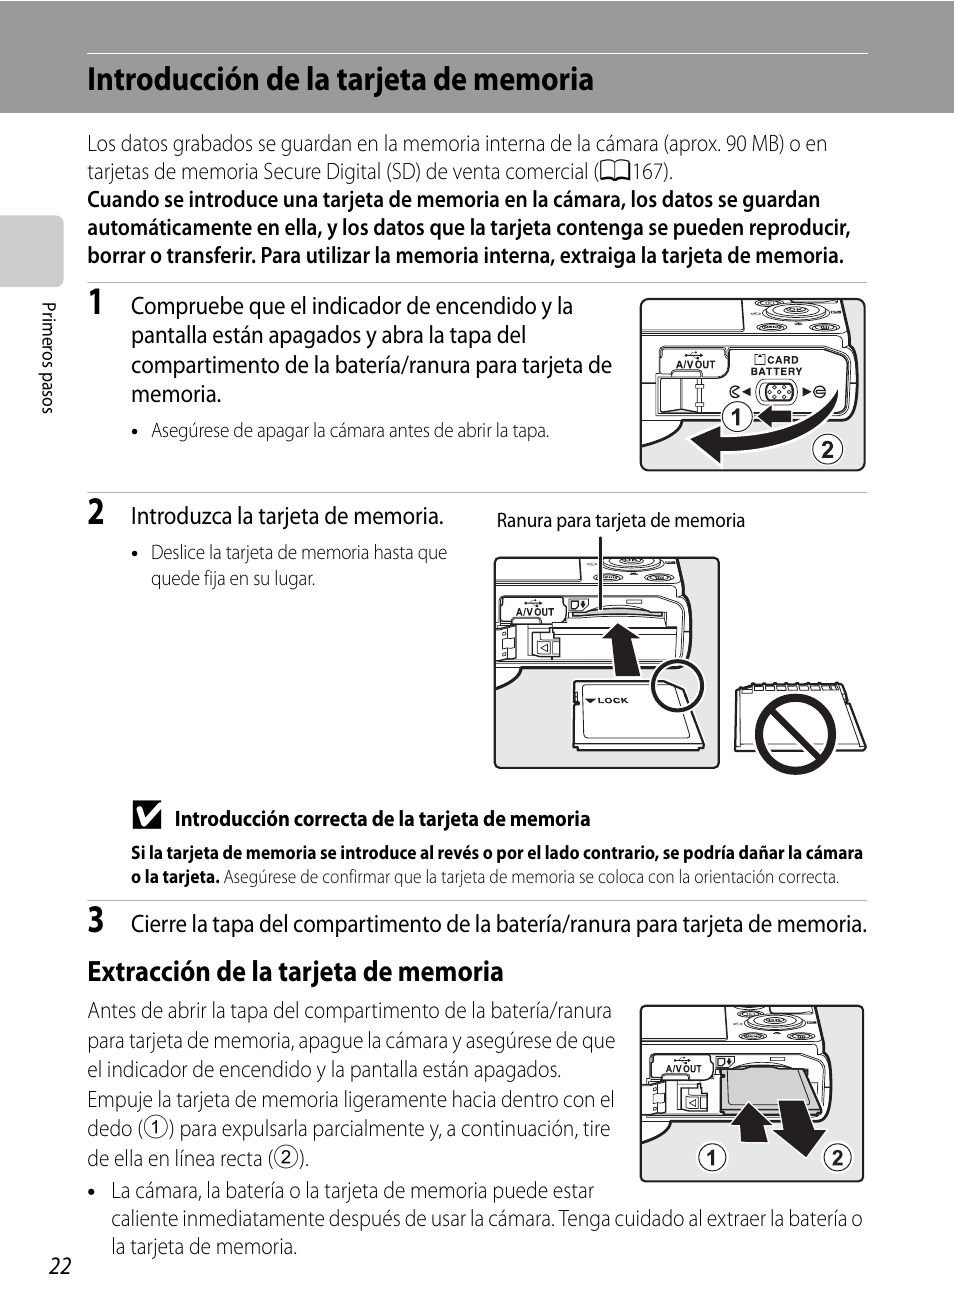 Introducción de la tarjeta de memoria, Extracción de la tarjeta de memoria | Nikon Coolpix P300 Manual del usuario | Página 34 / 200